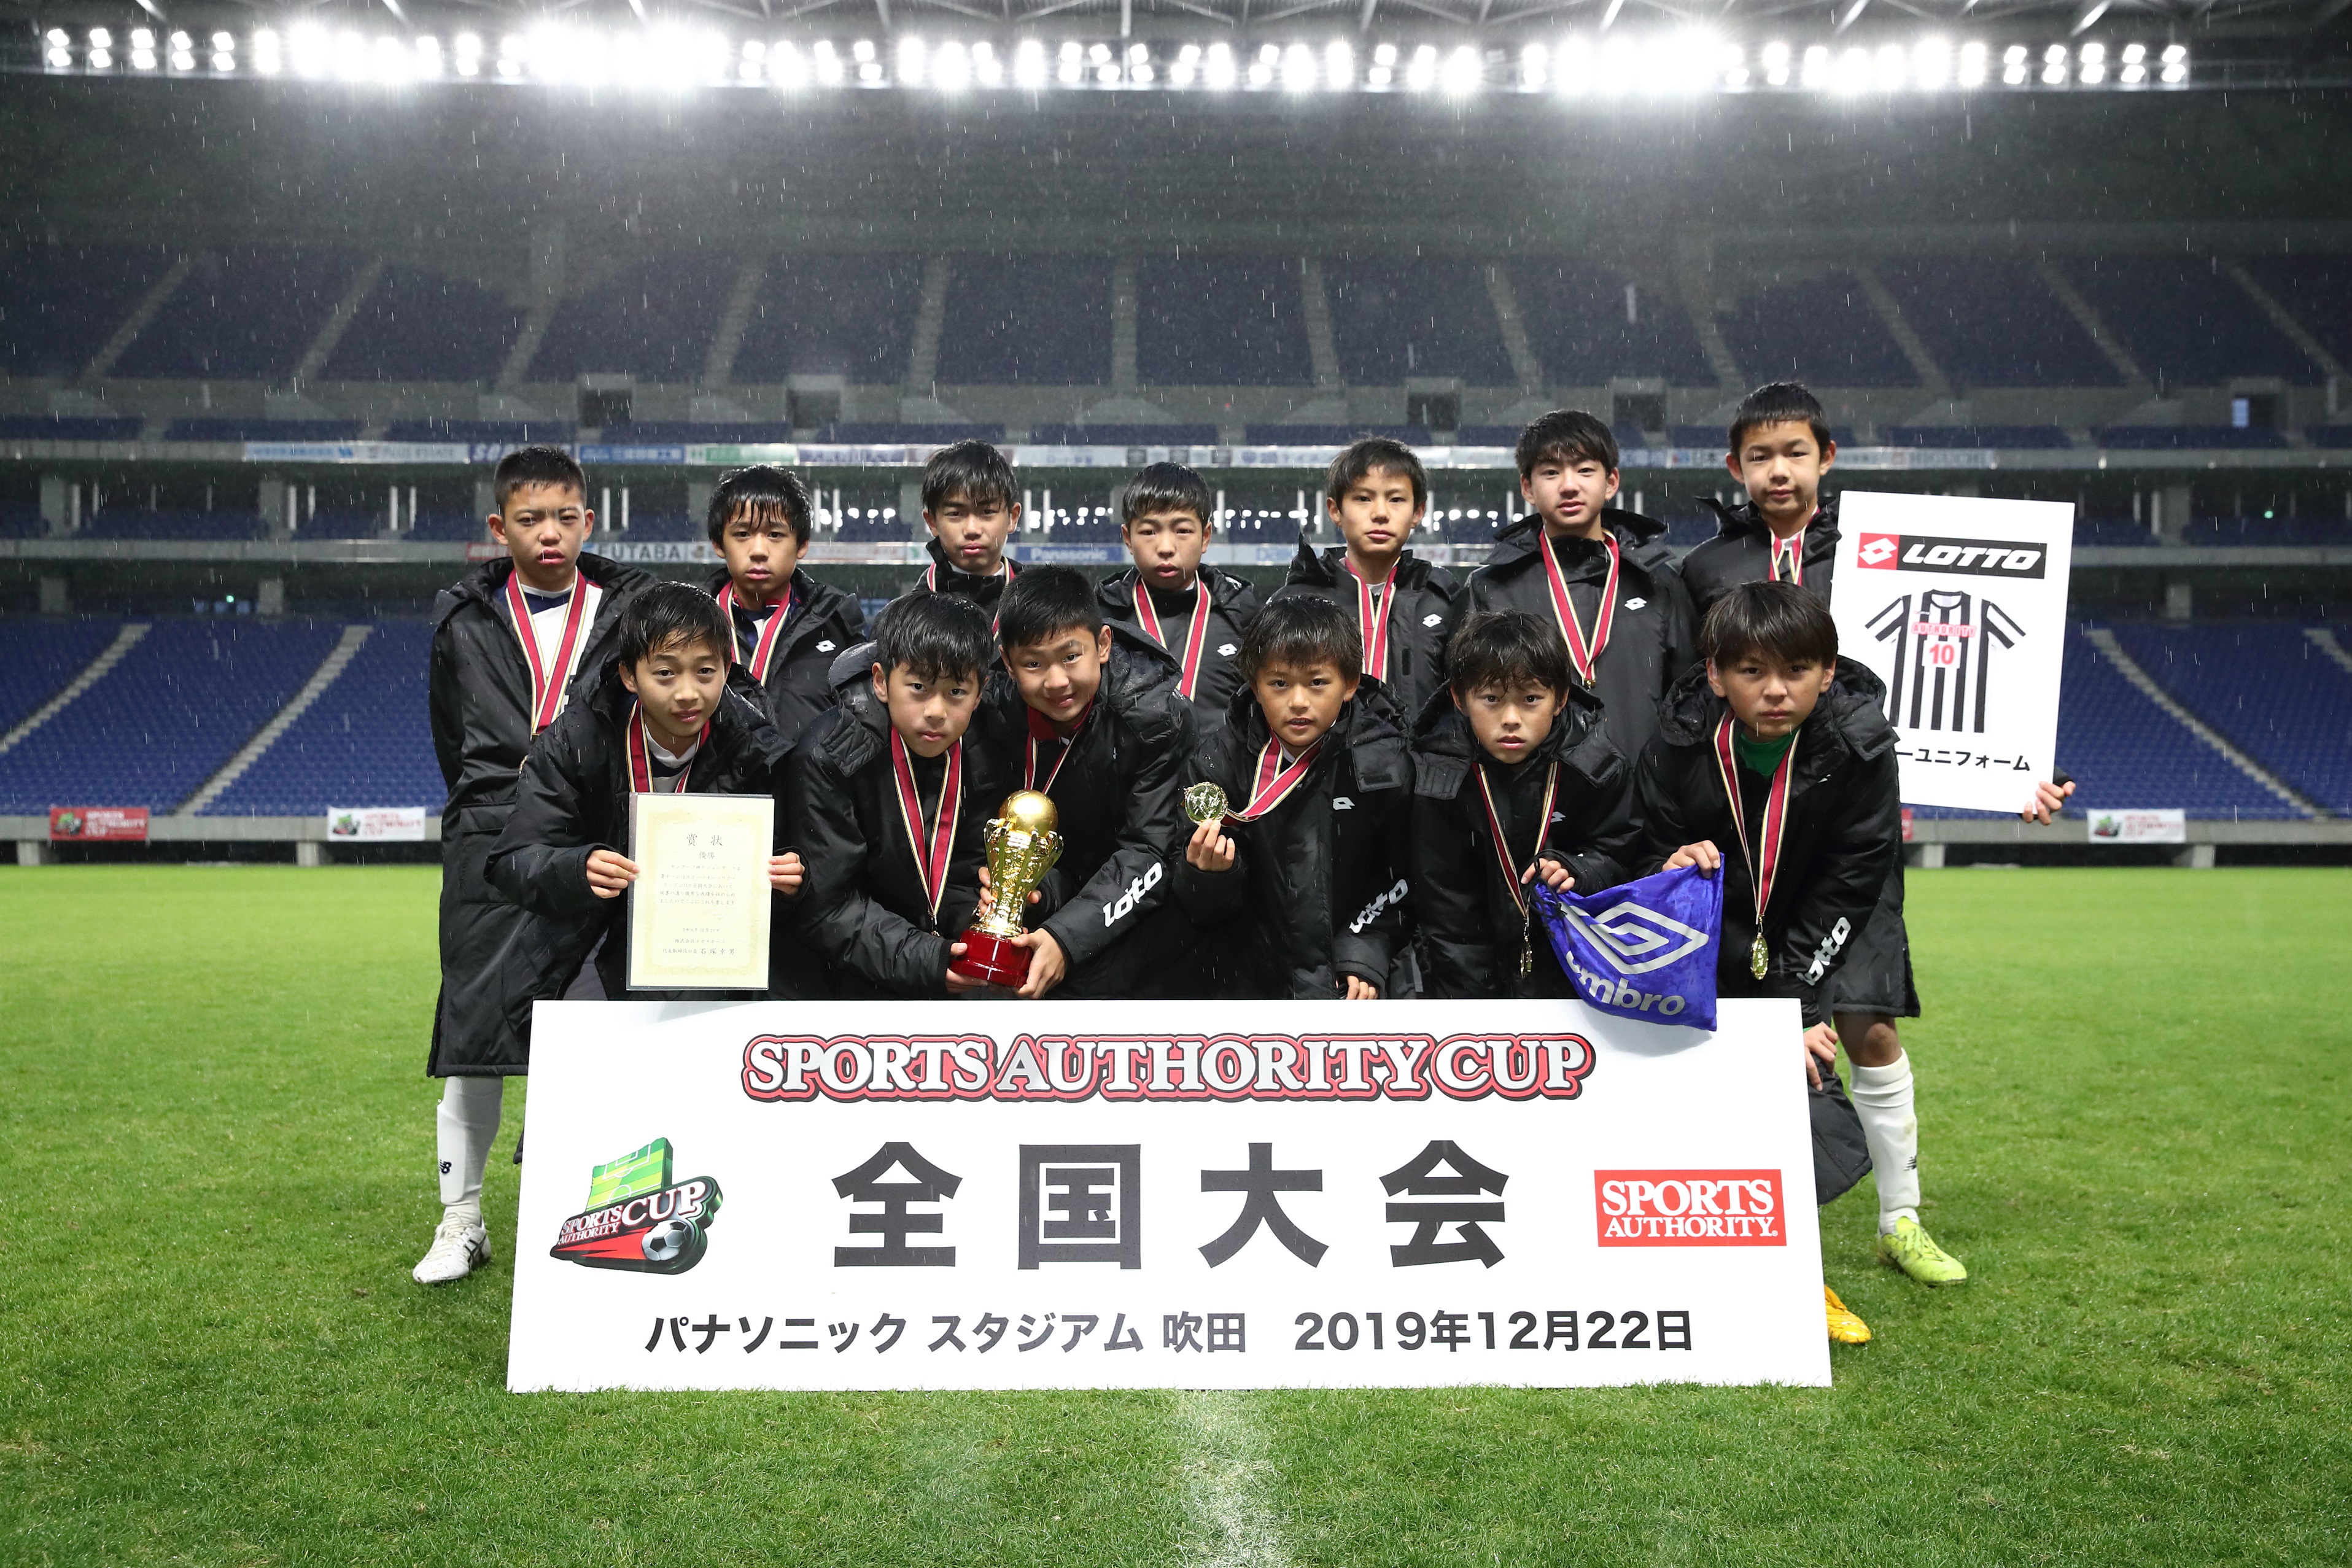 全国小学生サッカー217チームの頂上が センアーノ神戸ジュニア に決定 第15回スポーツオーソリティカップ19全国大会 株式会社メガスポーツのプレスリリース